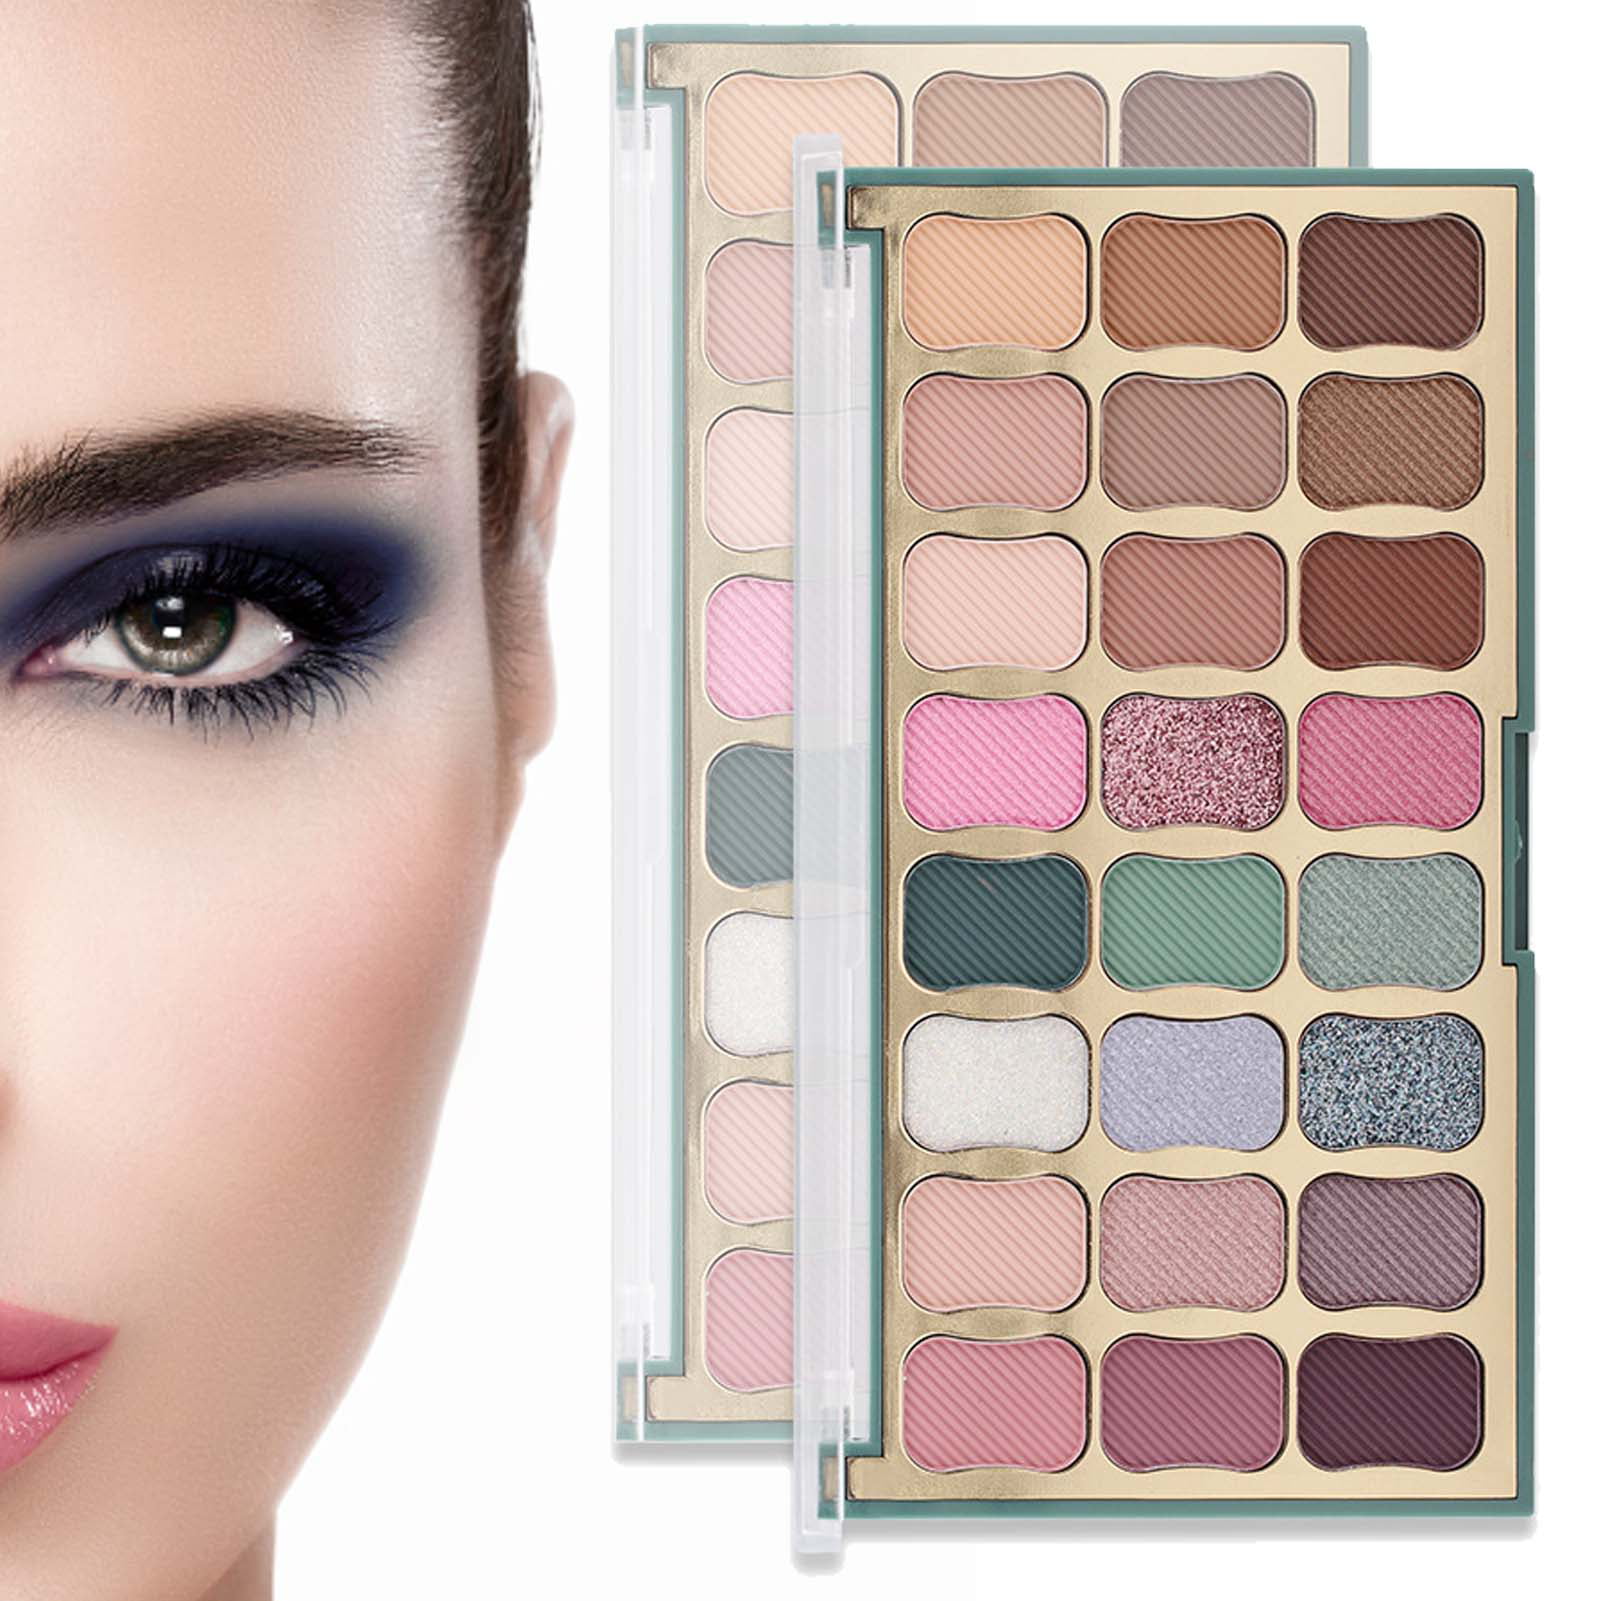 TAONMEISU Eyeshadow Compact | Waterproof Eyeshadow Makeup Palette with 24  Natural Nude Colors | Eyeshadow Palette Makeup Kit Lasting for Women Ladies  Everyday Makeup 